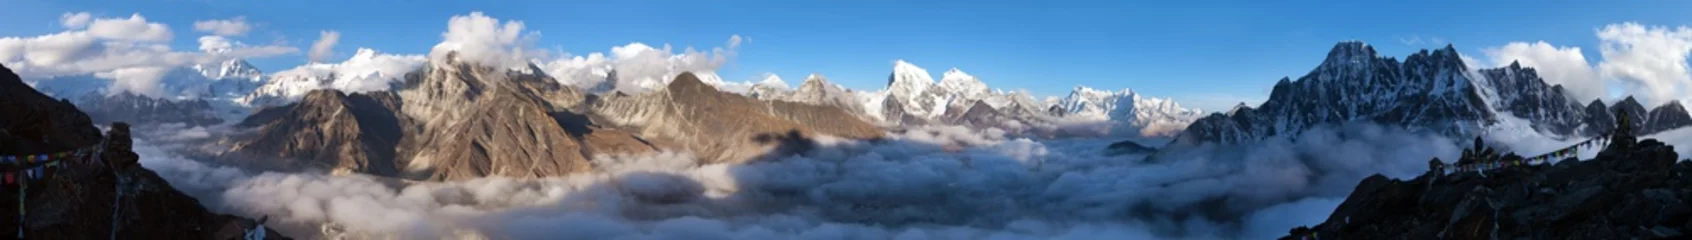 Cercles muraux Cho Oyu Mount Everest, Lhotse, Makalu and Cho Oyu from Gokyo Ri